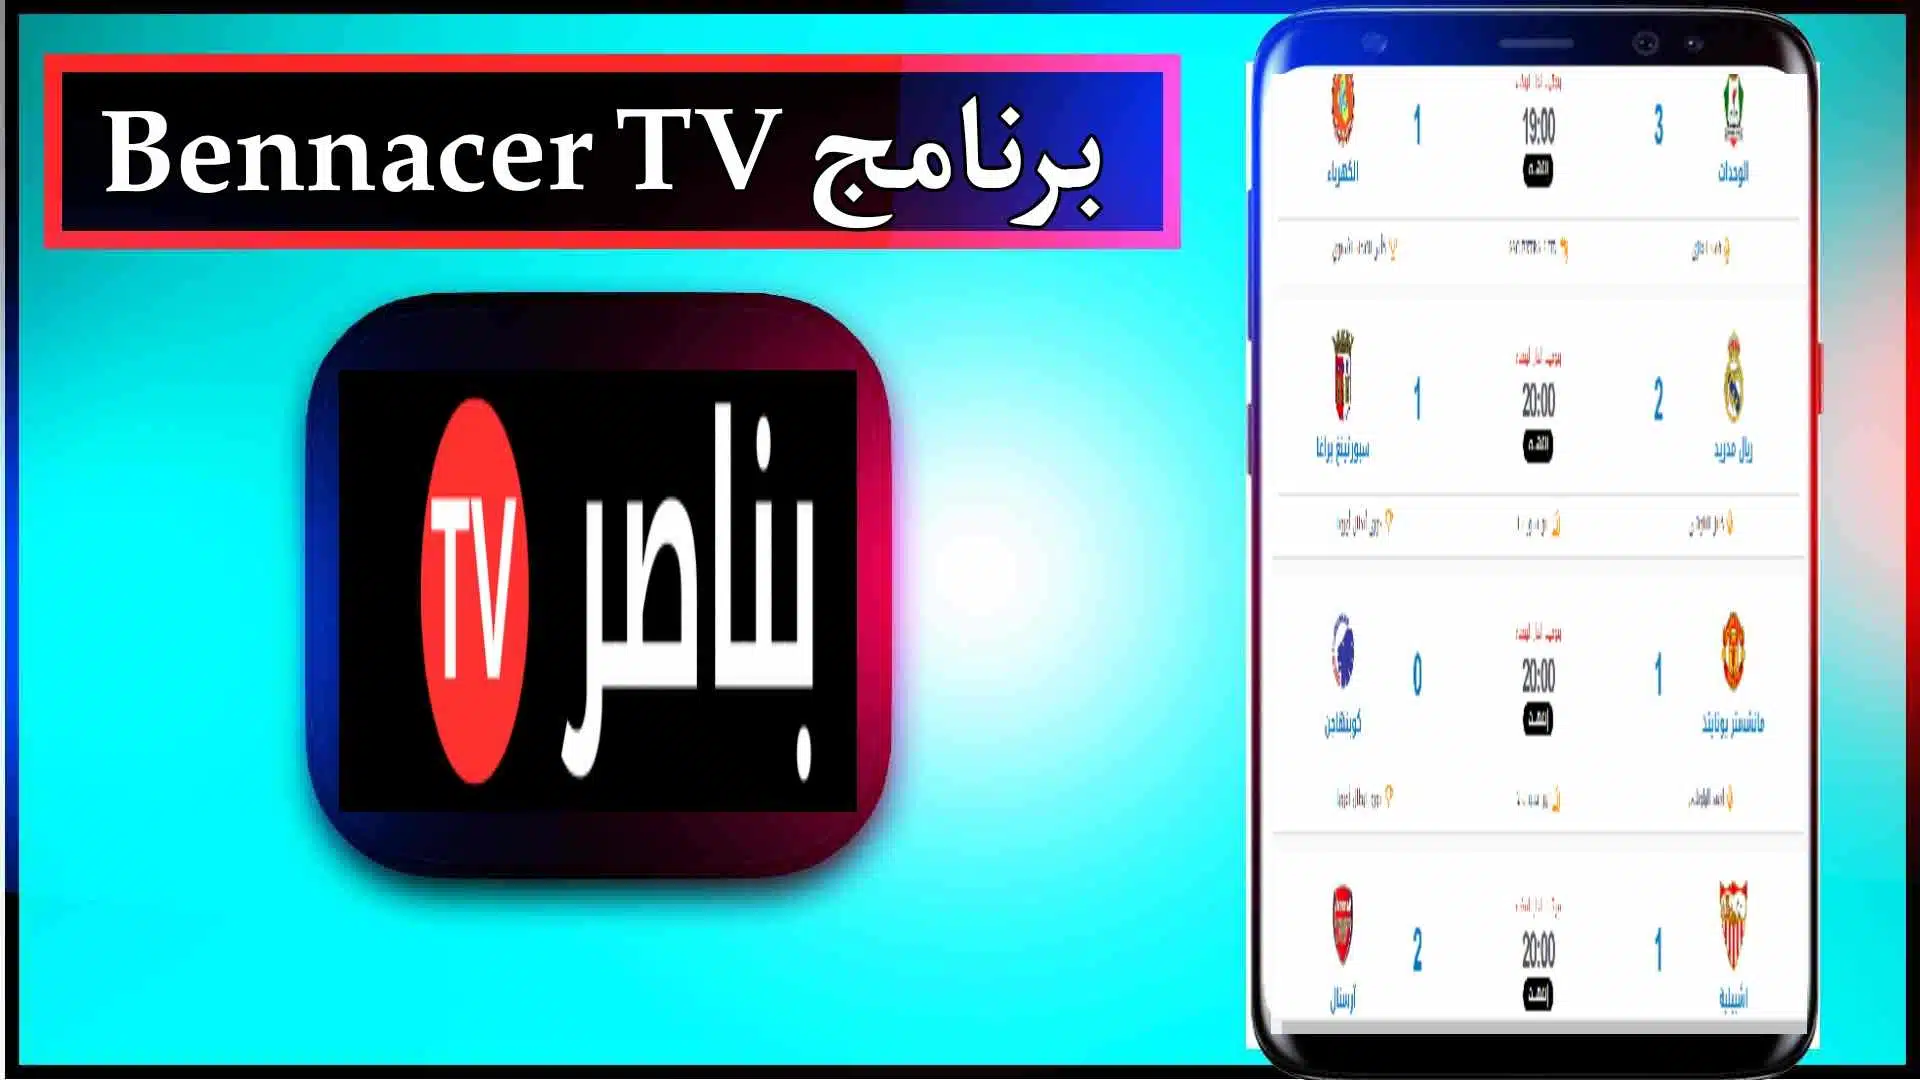 تحميل تطبيق بناصر تيفي Bennacer TV APK لمشاهدة المباريات بث مباشر 2